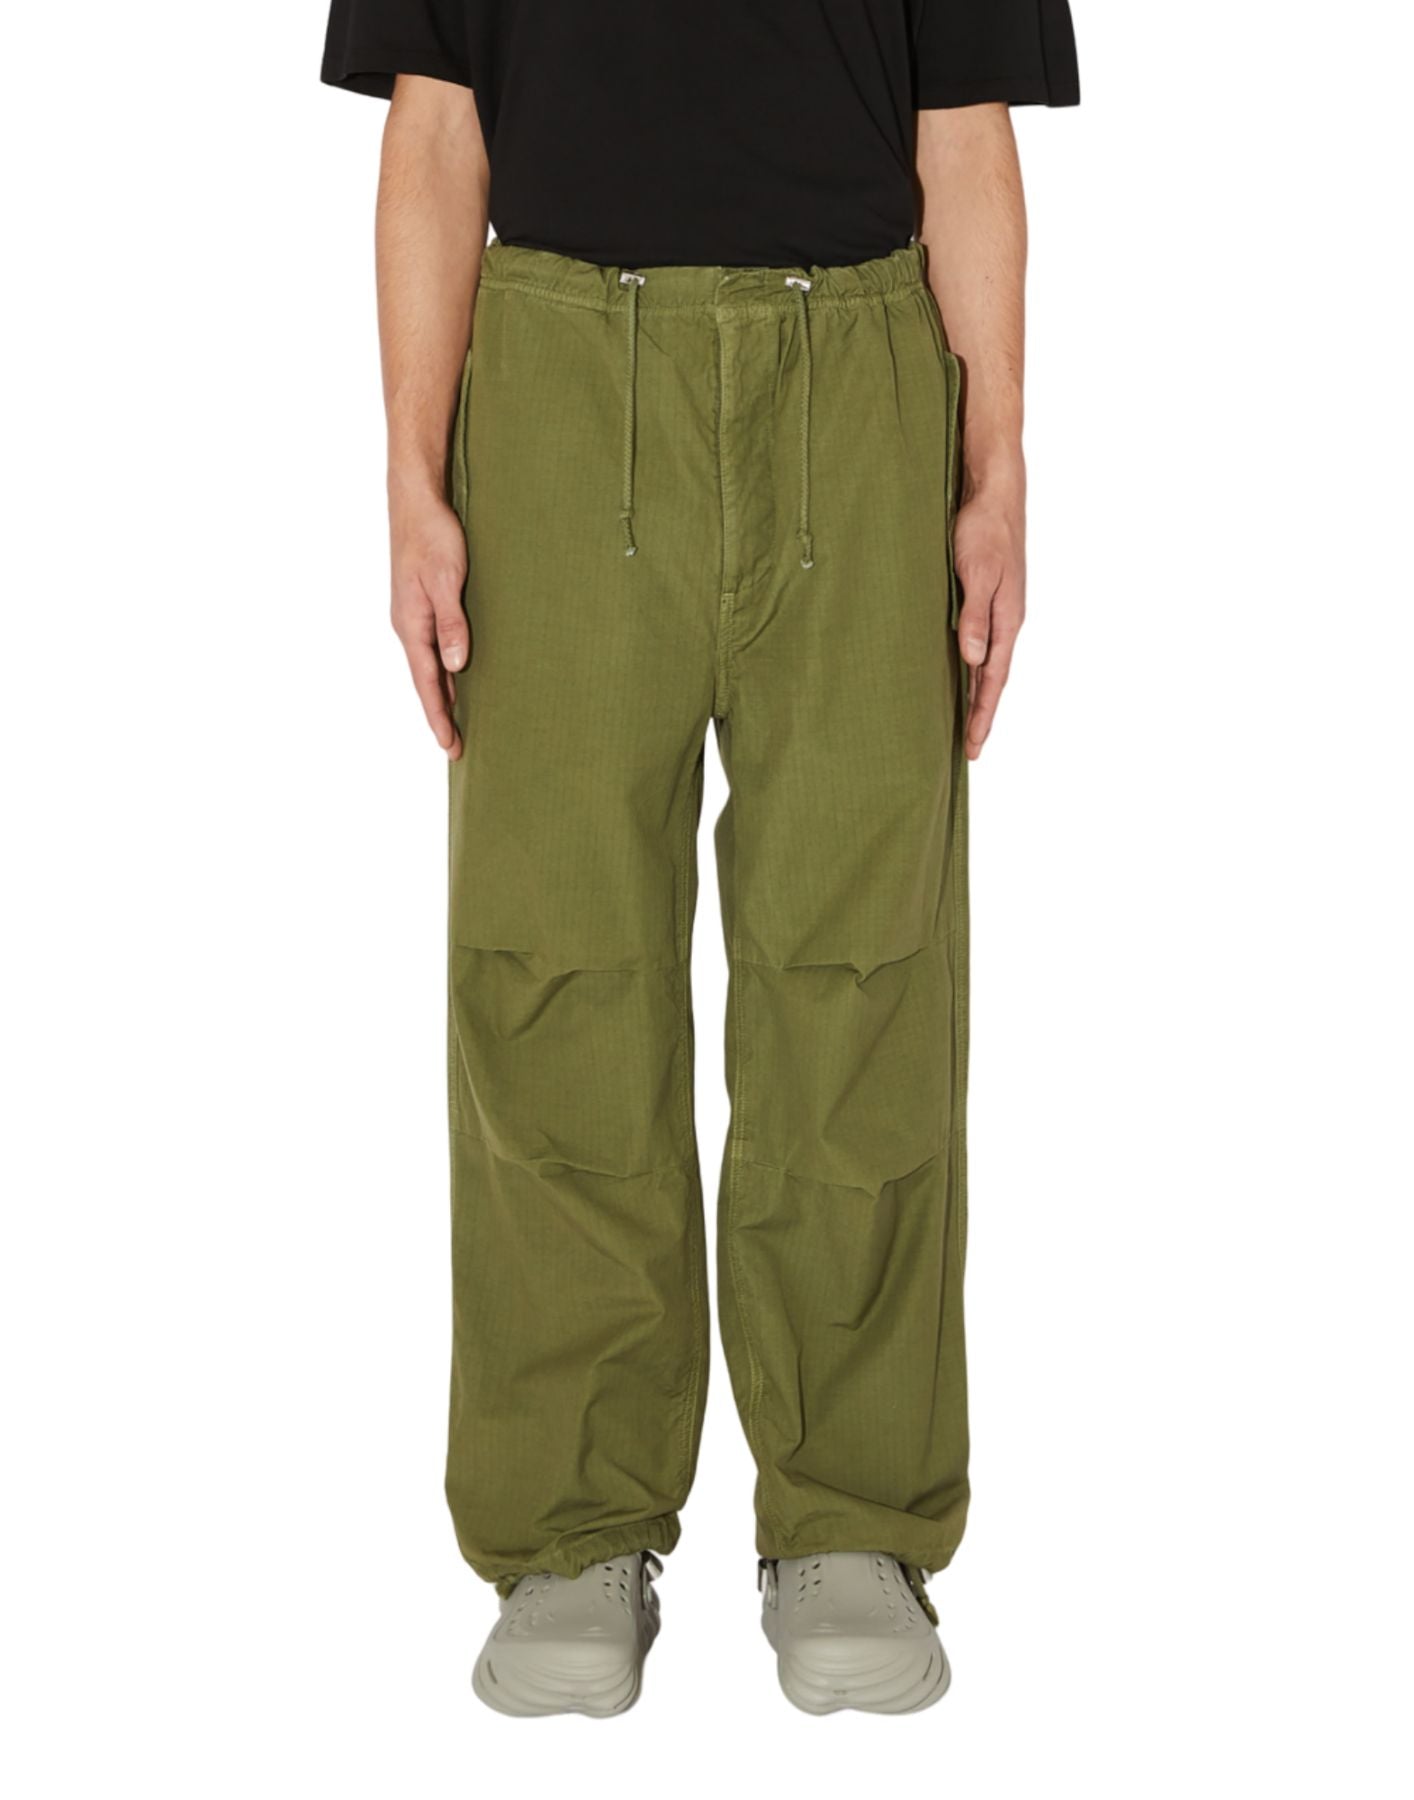 Pantalones hombre amu067p4160111 ejército verde Amish